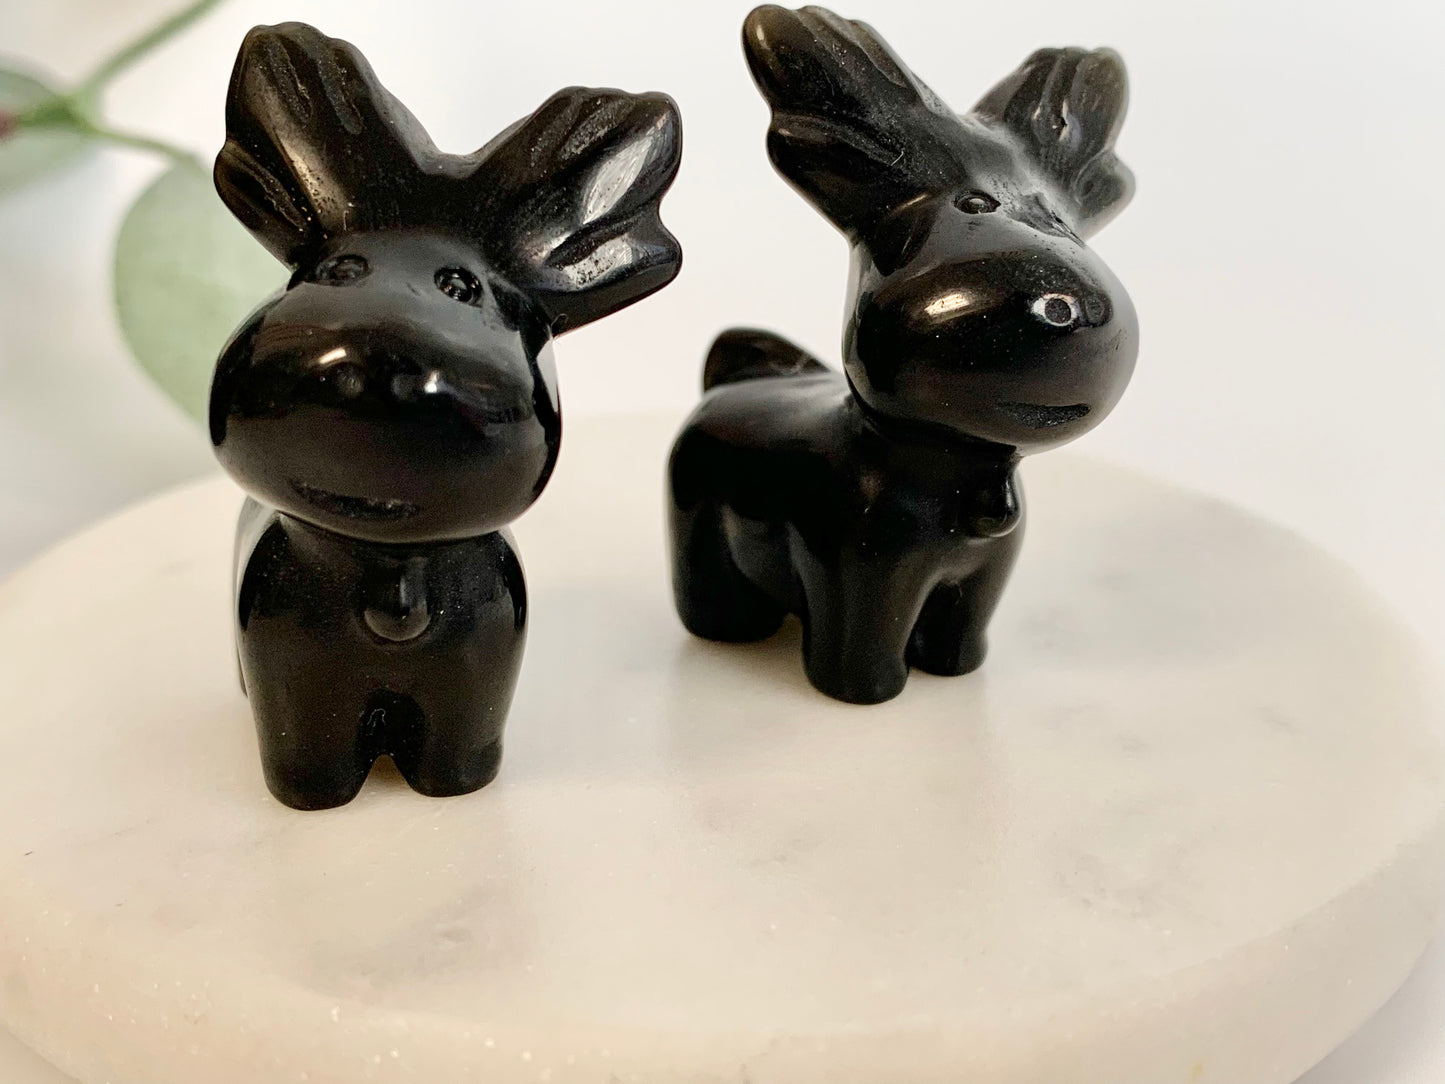 Moose/Reindeer, black obsidian